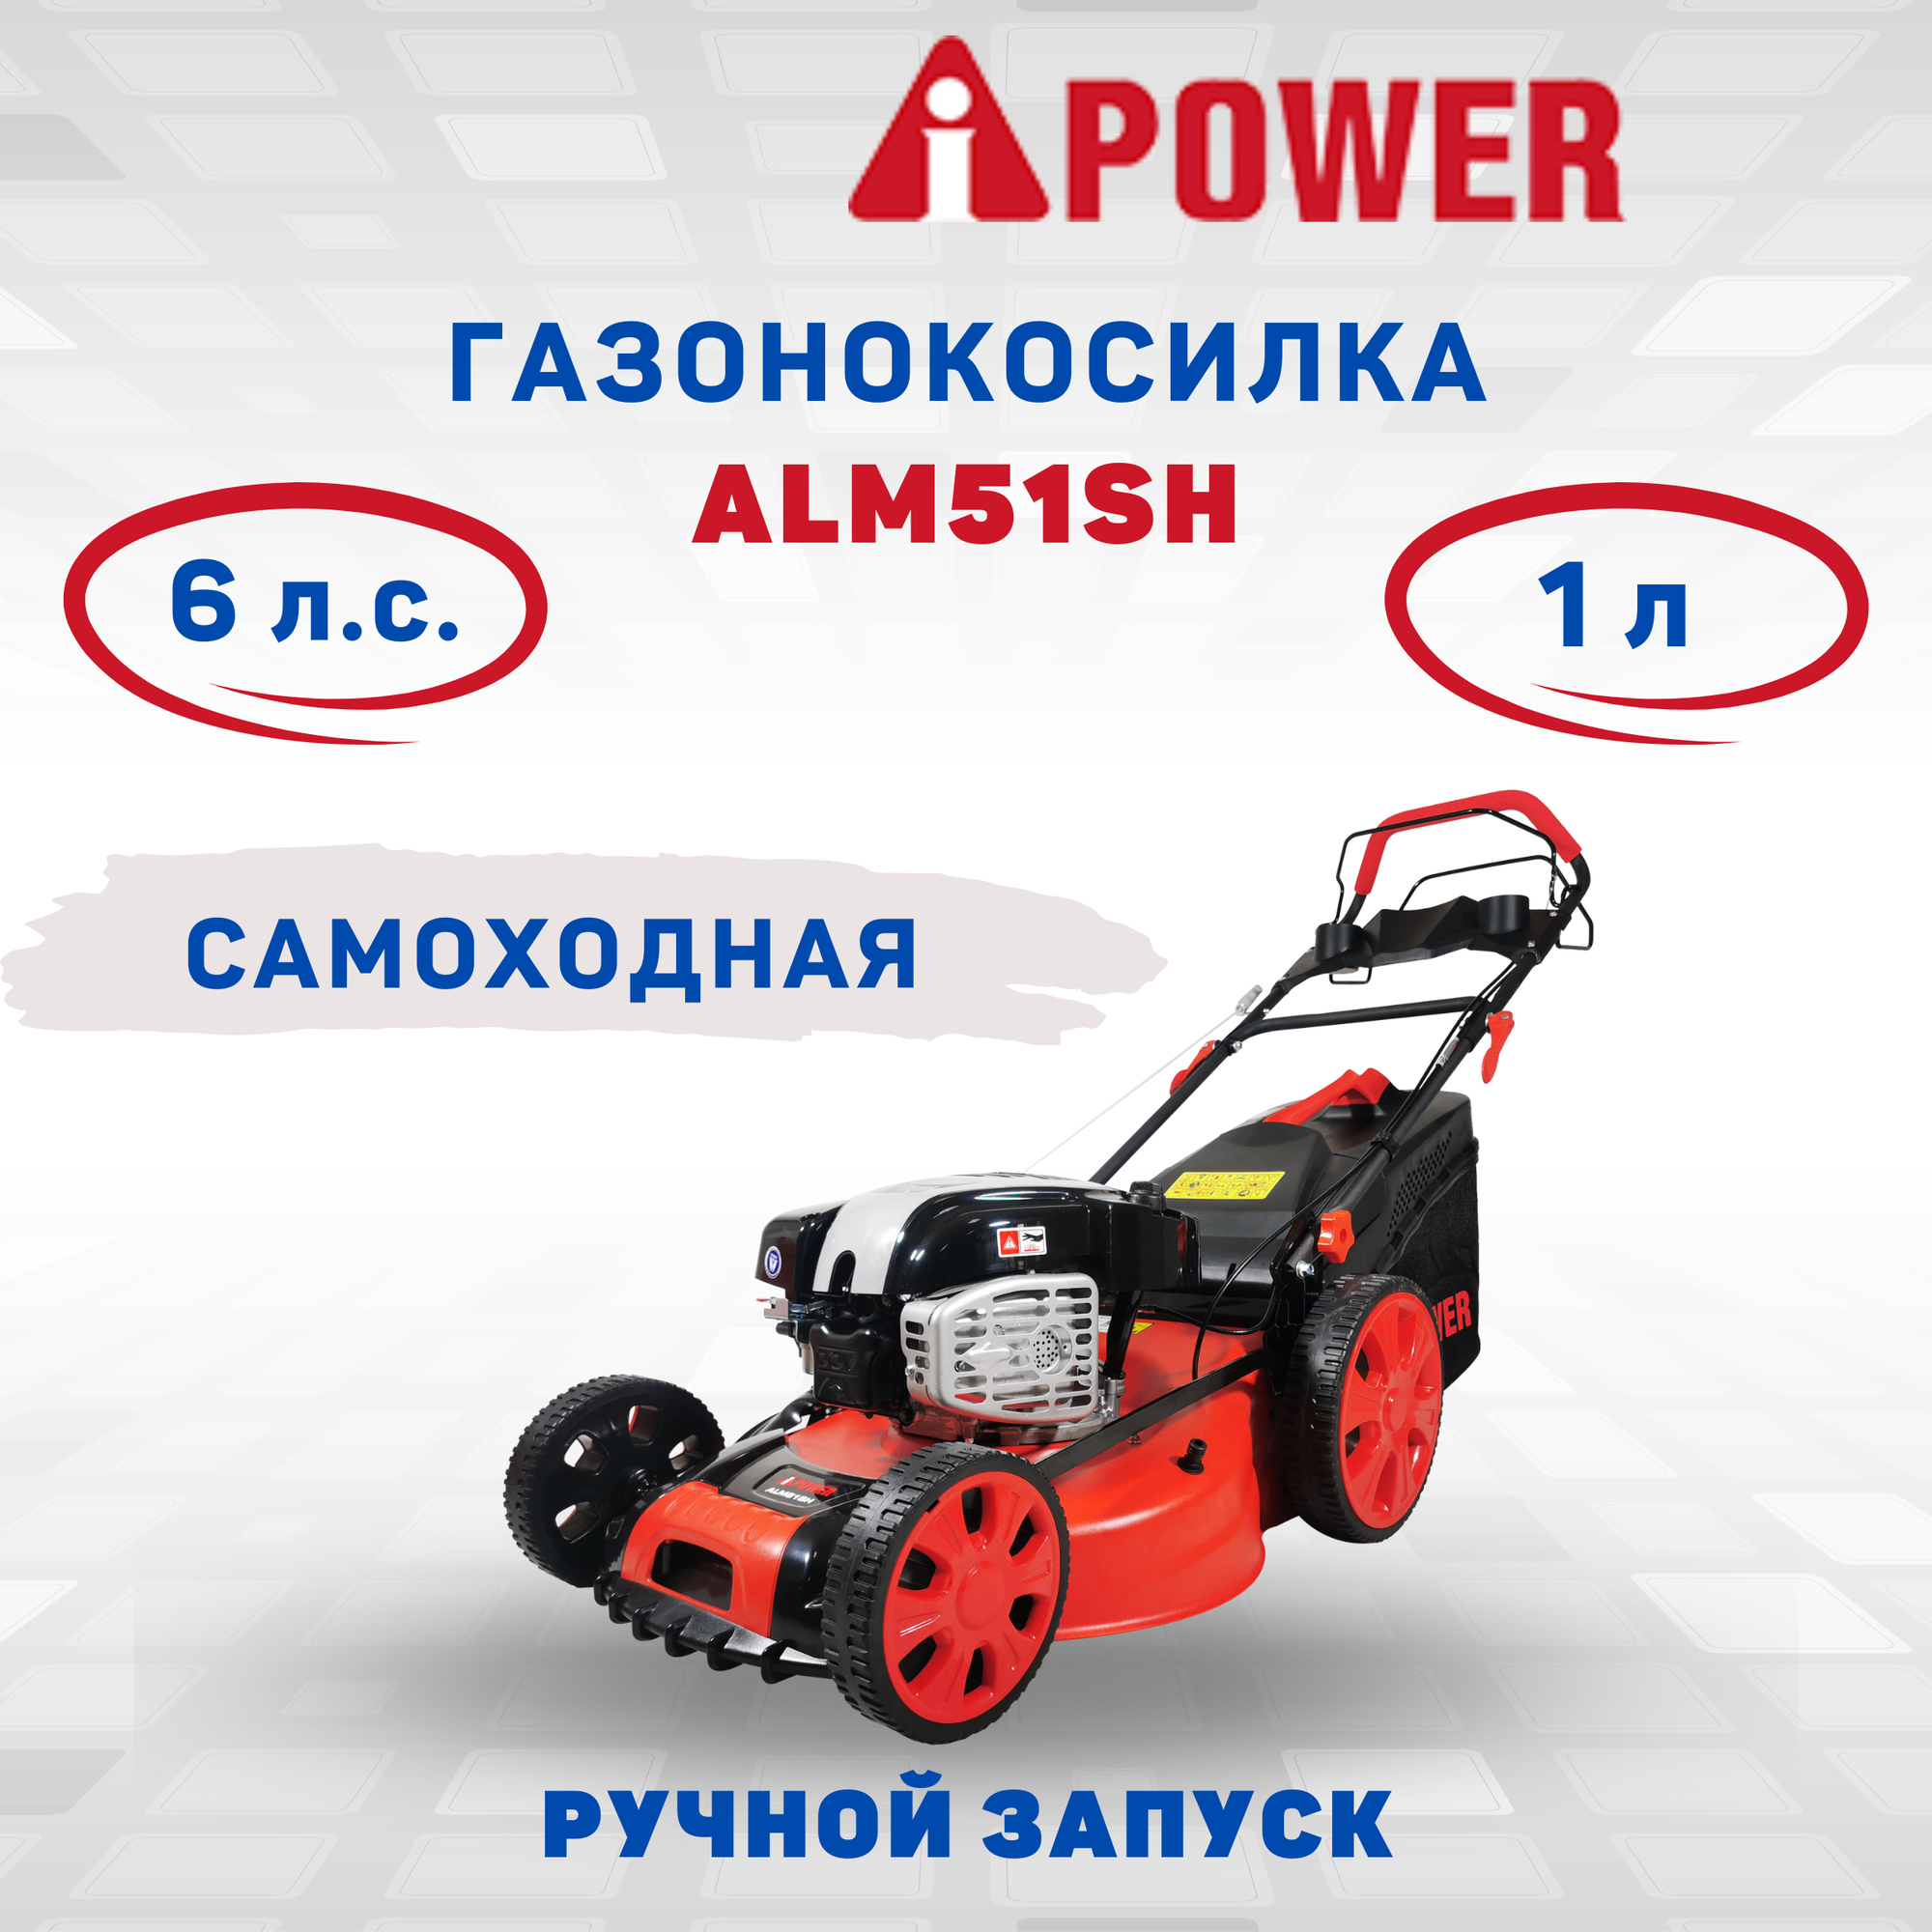 Бензиновая газонокоcилка A-iPower ALM51SH (41105)